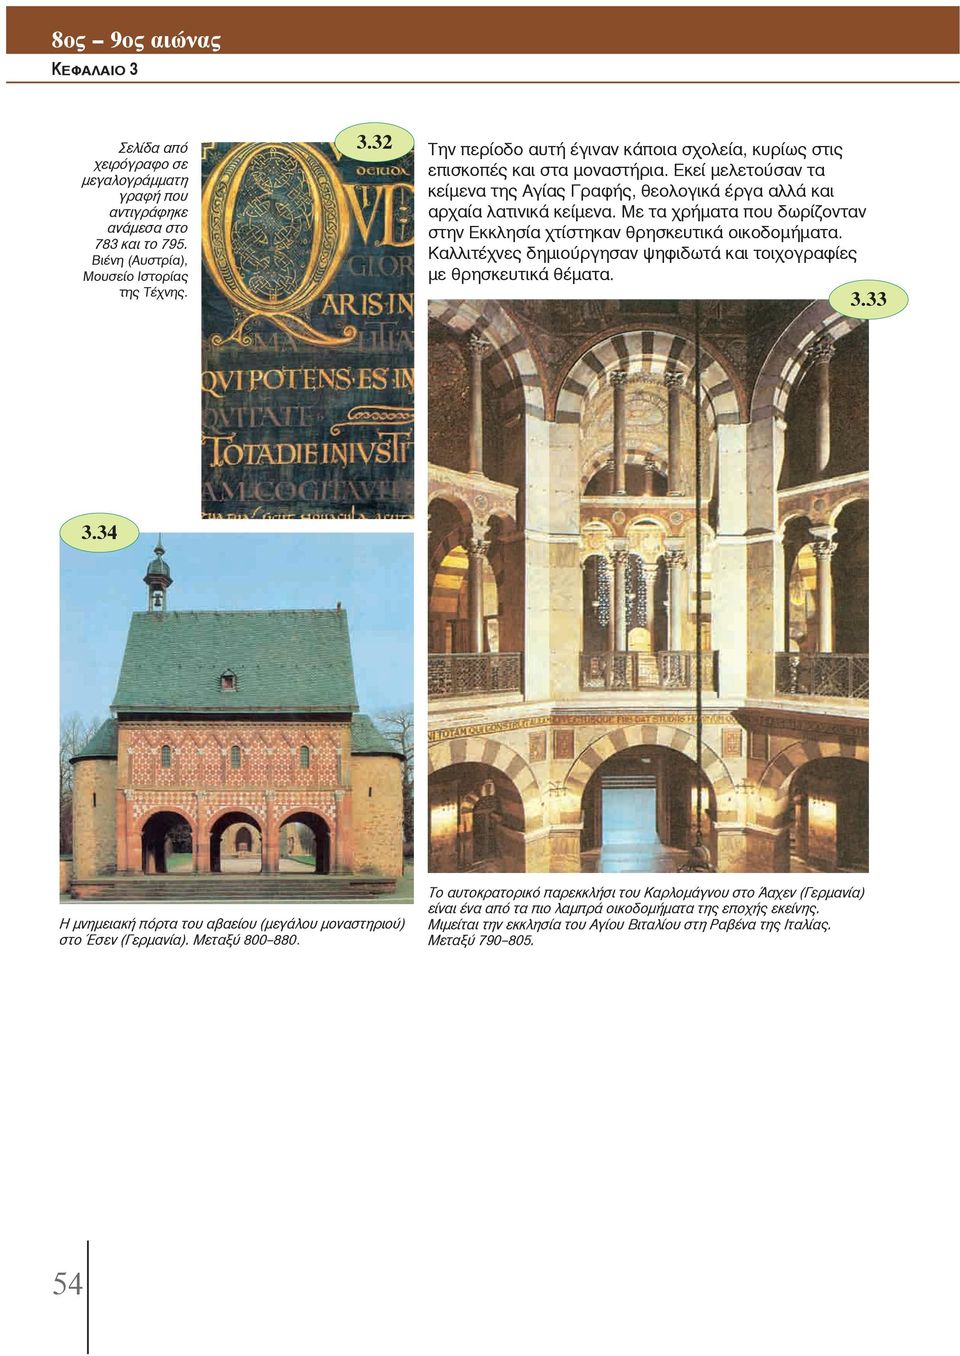 Με τα χρήματα που δωρίζονταν στην Εκκλησία χτίστηκαν θρησκευτικά οικοδομήματα. Καλλιτέχνες δημιούργησαν ψηφιδωτά και τοιχογραφίες με θρησκευτικά θέματα. 3.33 3.